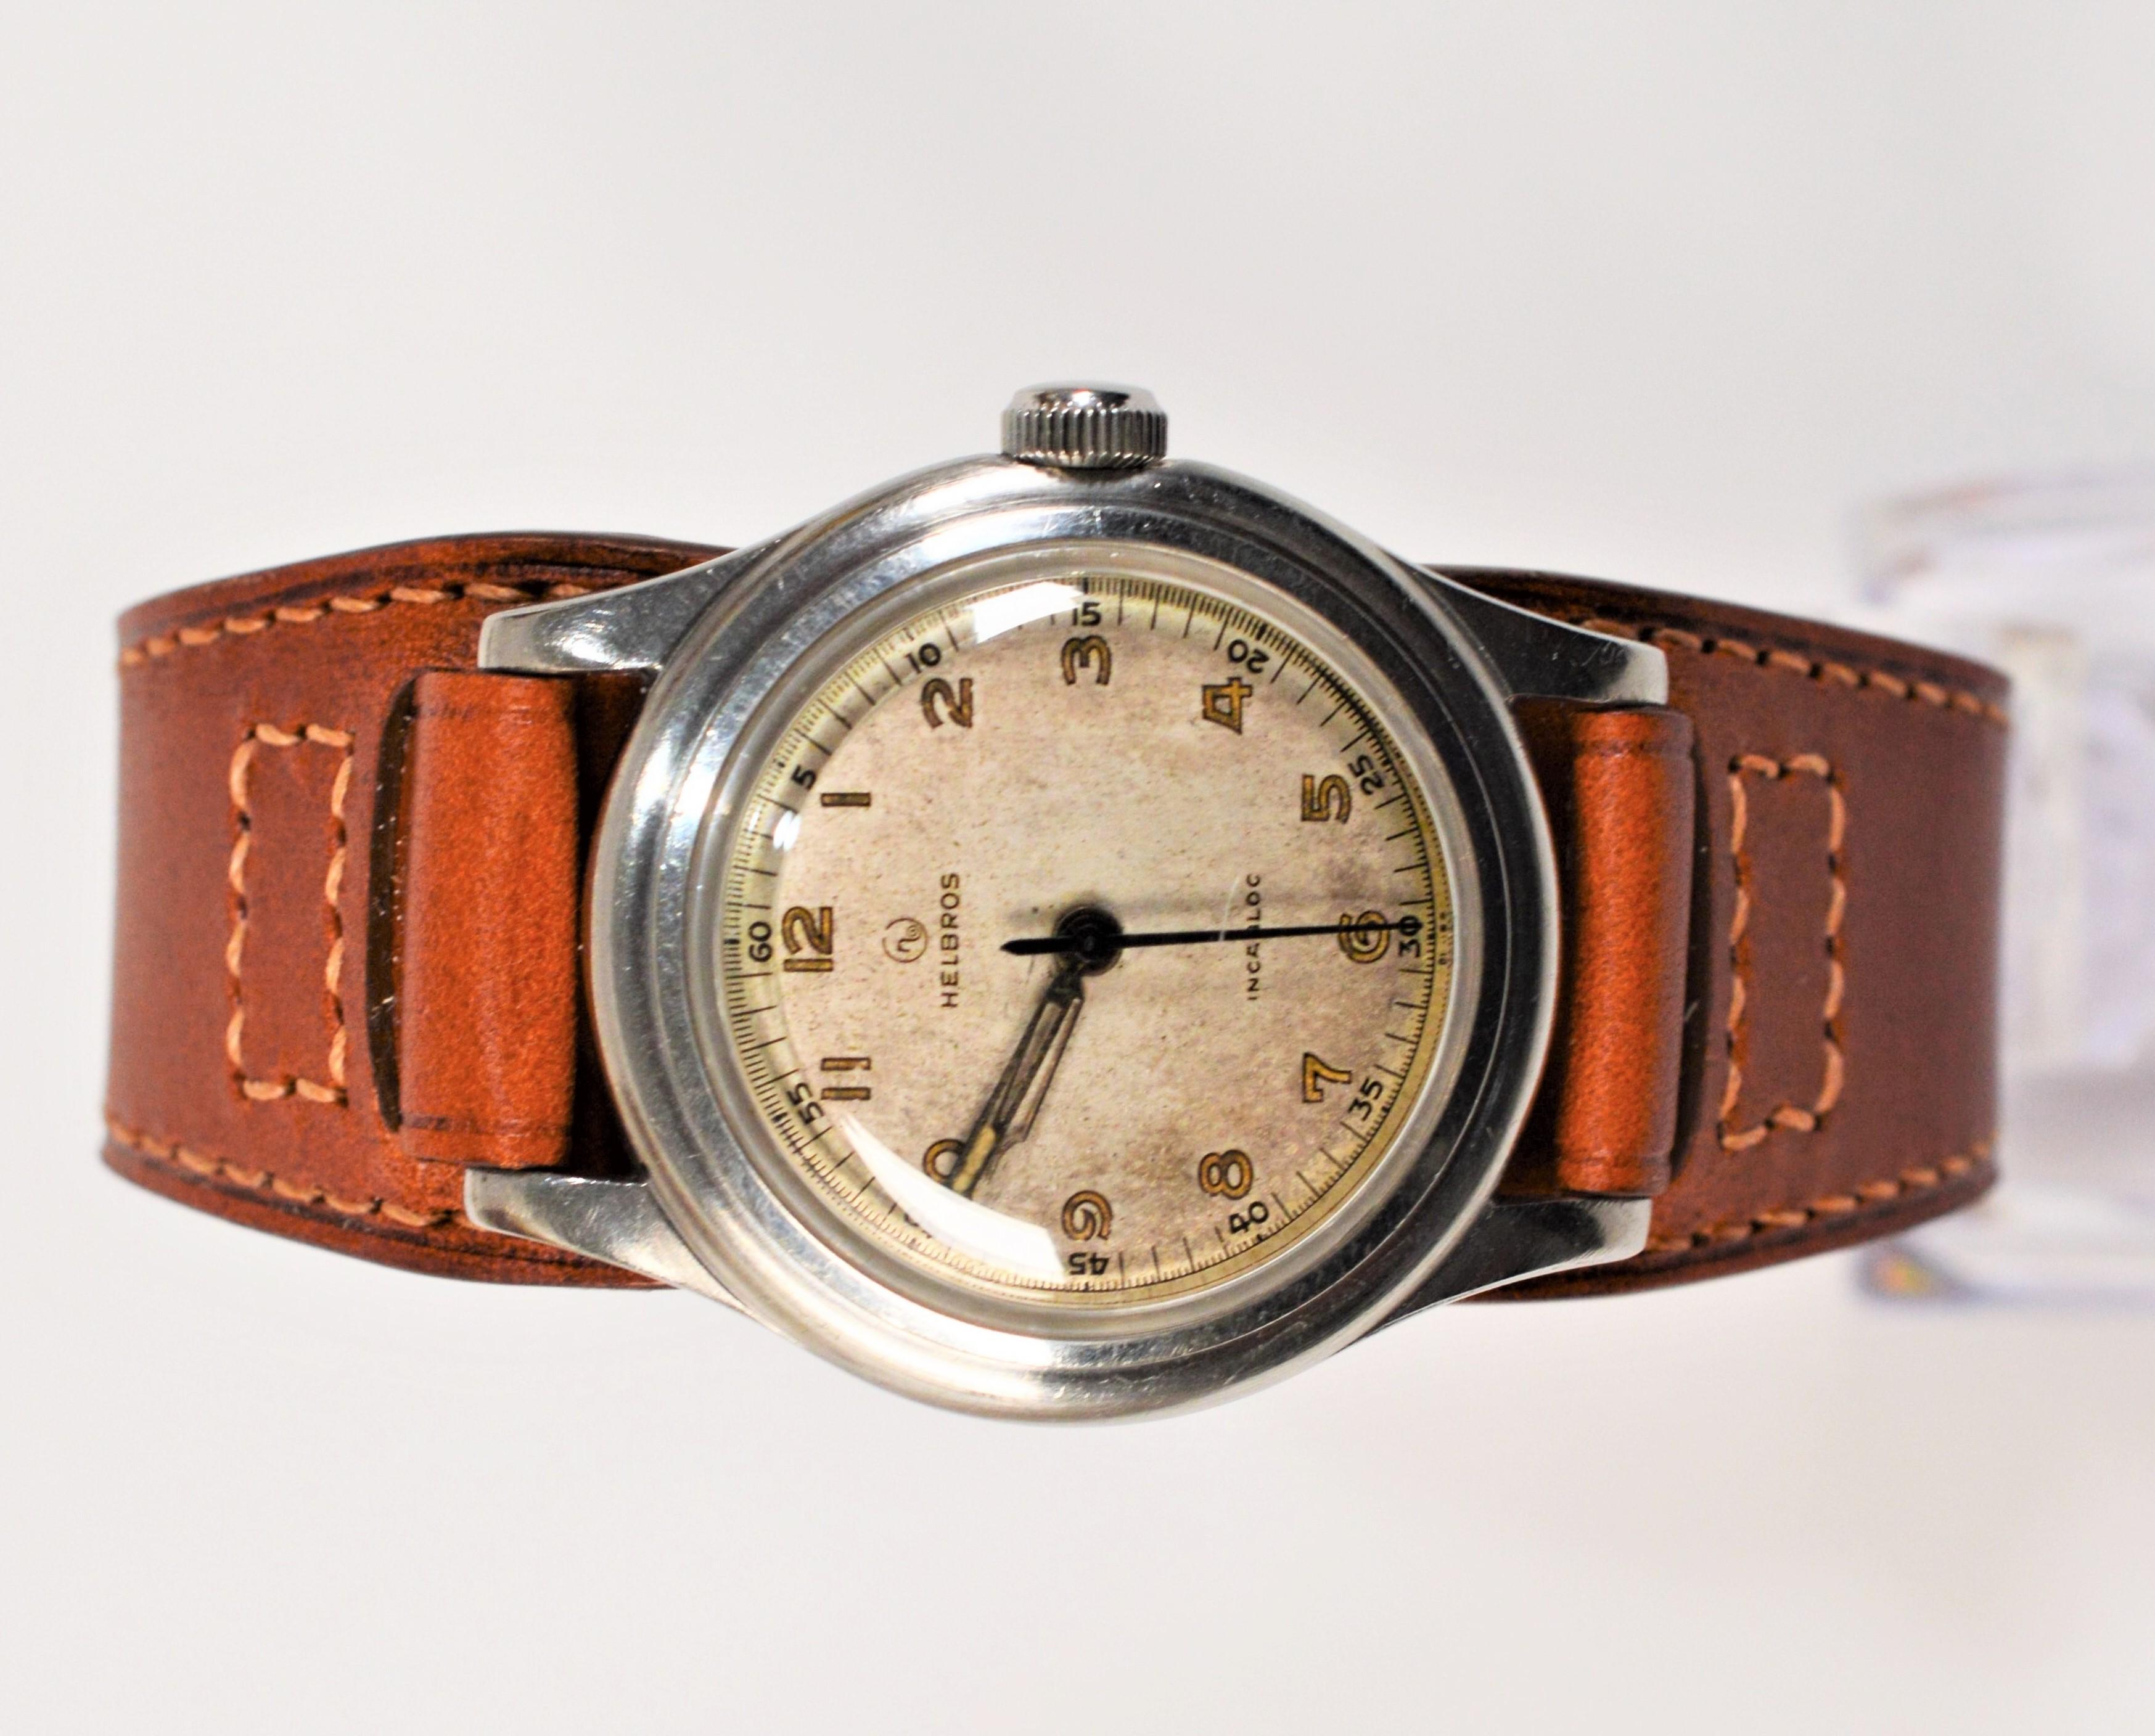 Auténtico de la época de la Segunda Guerra Mundial, este Reloj de Pulsera Helbros con caja de acero de 33 mm evoca un auténtico aire vintage. De cuerda manual con movimiento de siete rubíes  este reloj está en estado original y presenta mucho